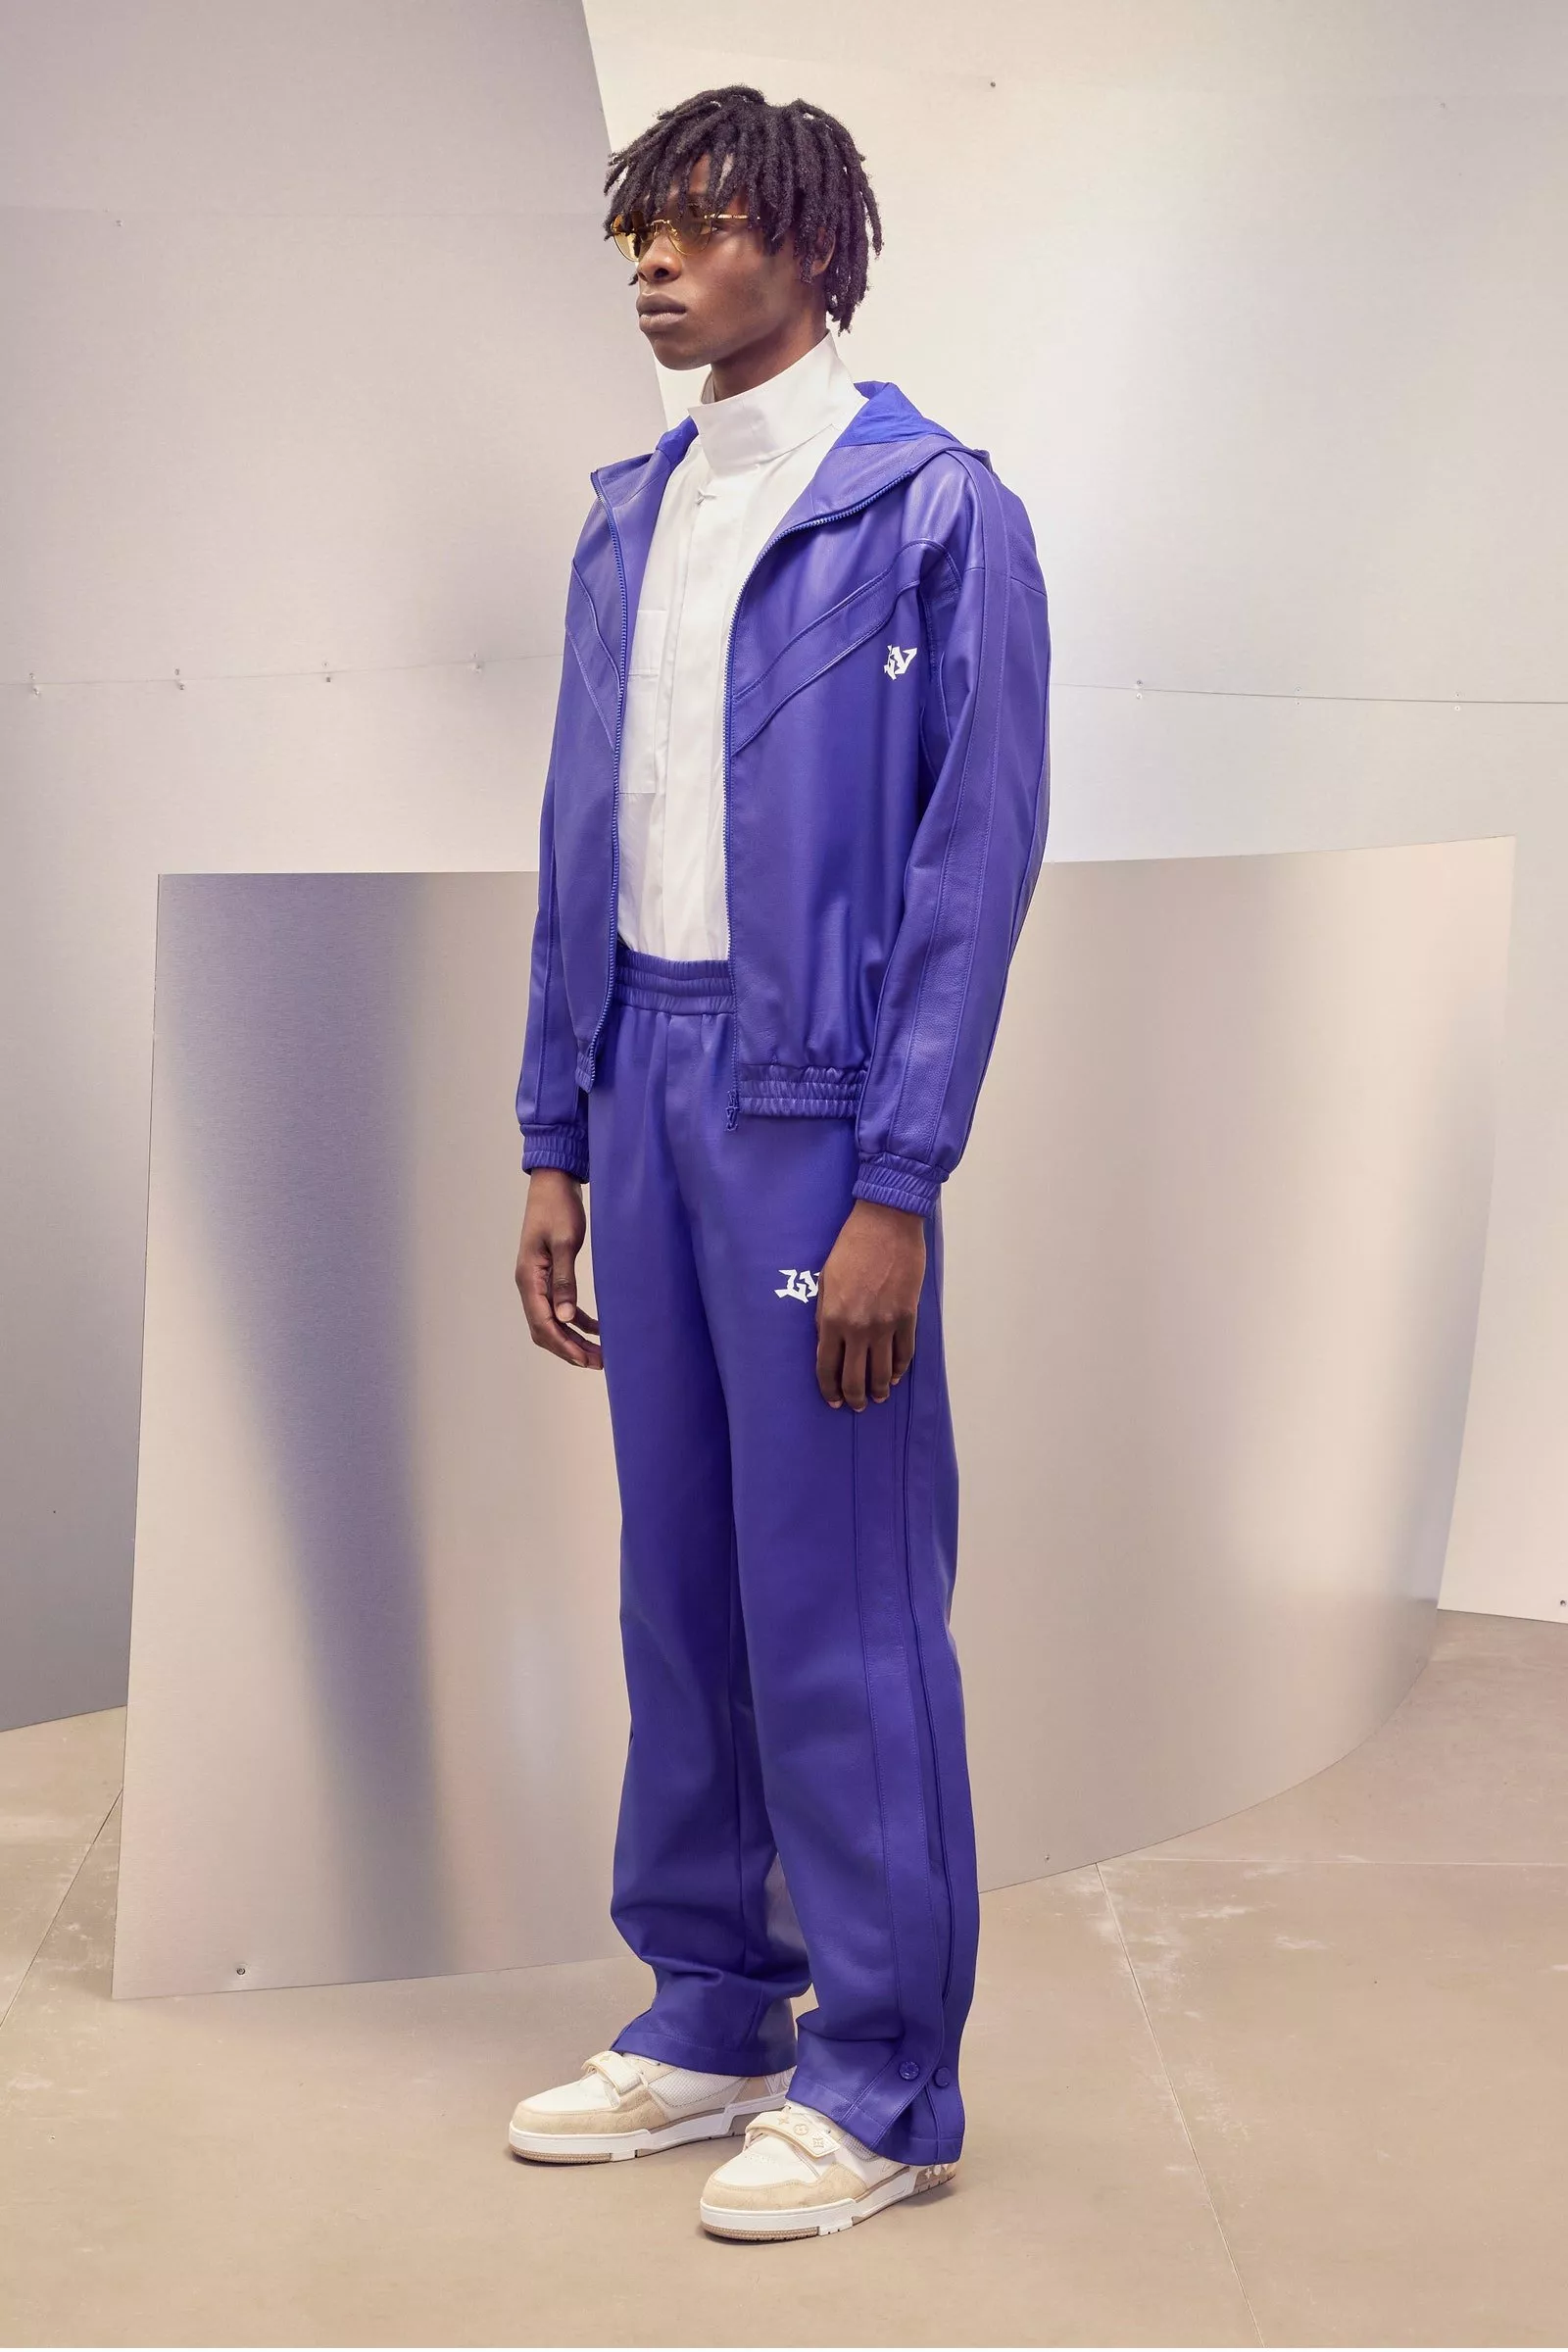 Louis Vuitton تُطلق مجموعتها التحضيرية للأزياء الرجالية لخريف 2022 من توقيع Virgil Abloh